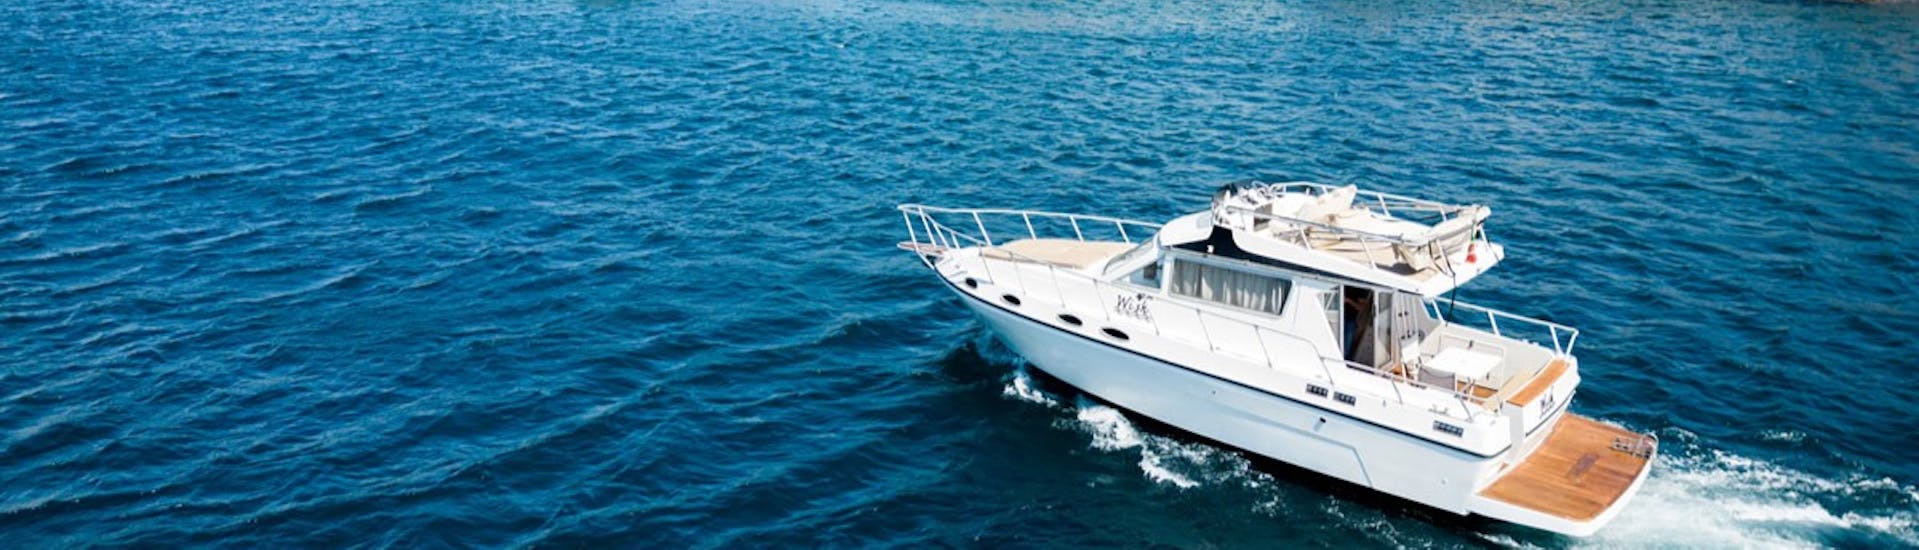 Das Boot Wish während der Privaten Bootstour von Catania nach Brucoli mit Apéritif mit Wish Boat Rent Catania.